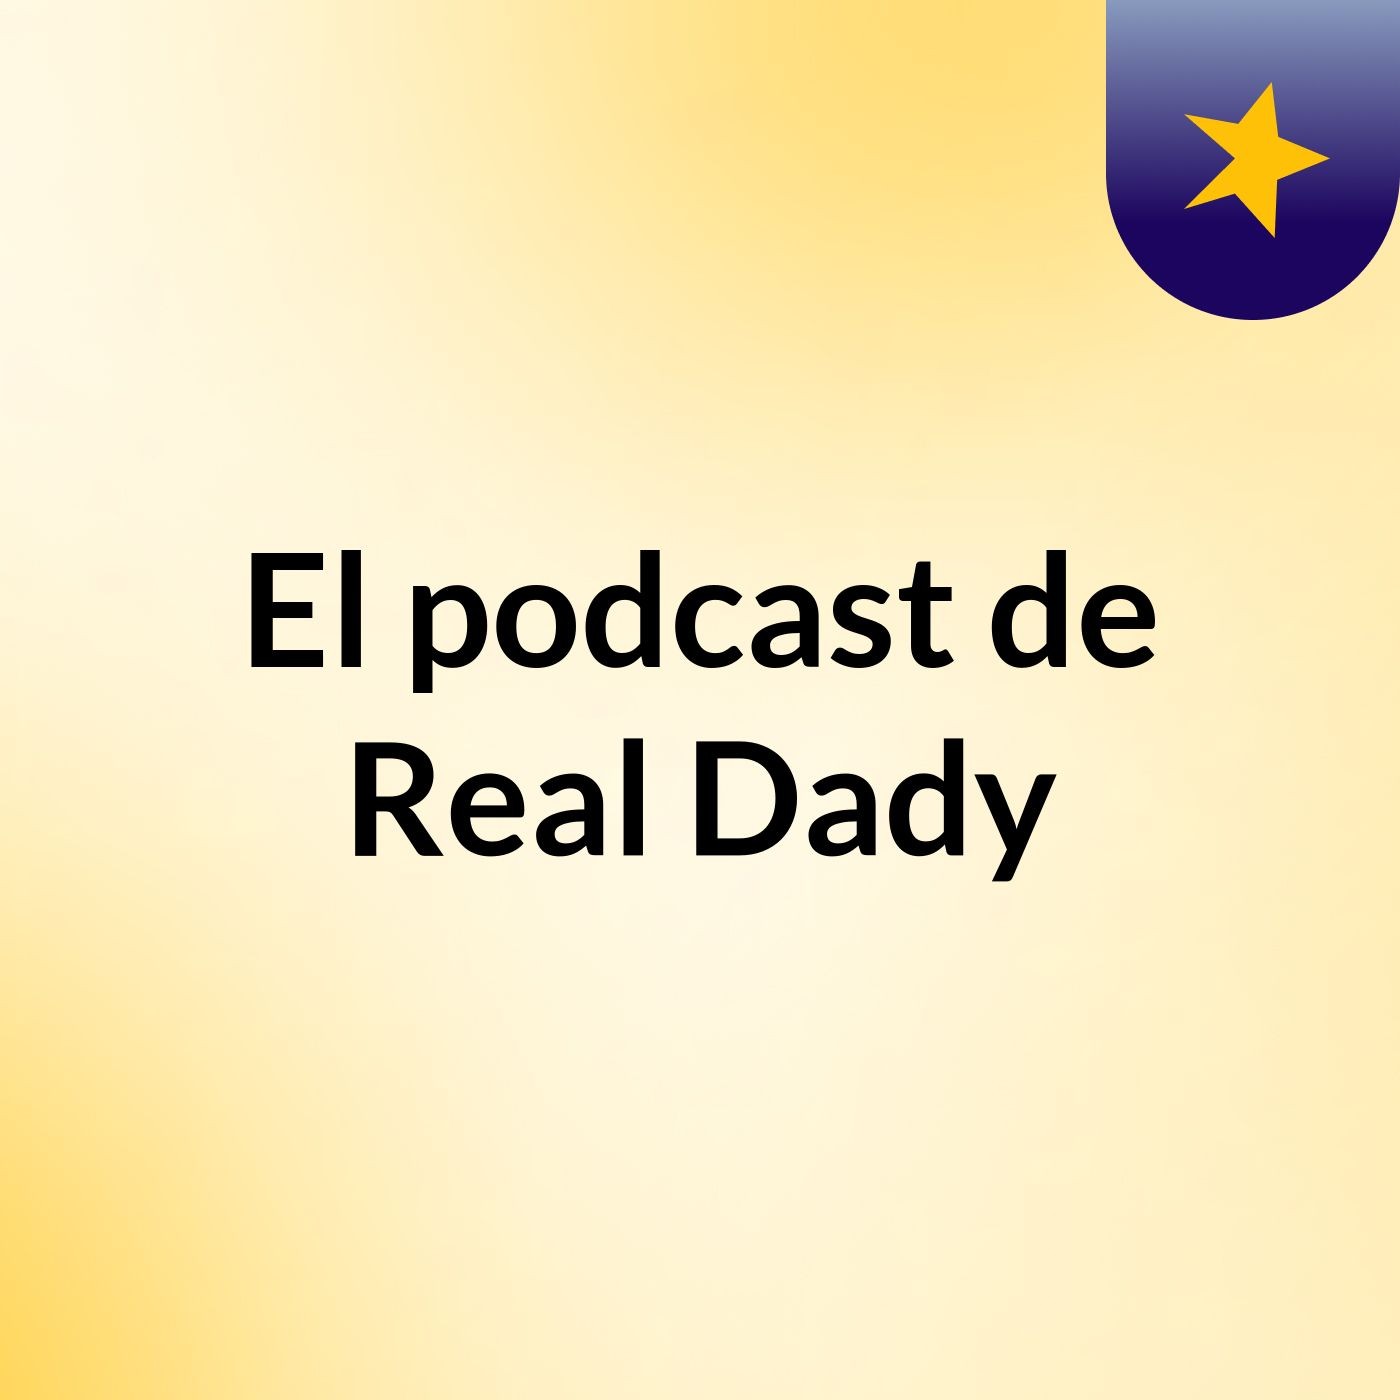 El podcast de Real Dady